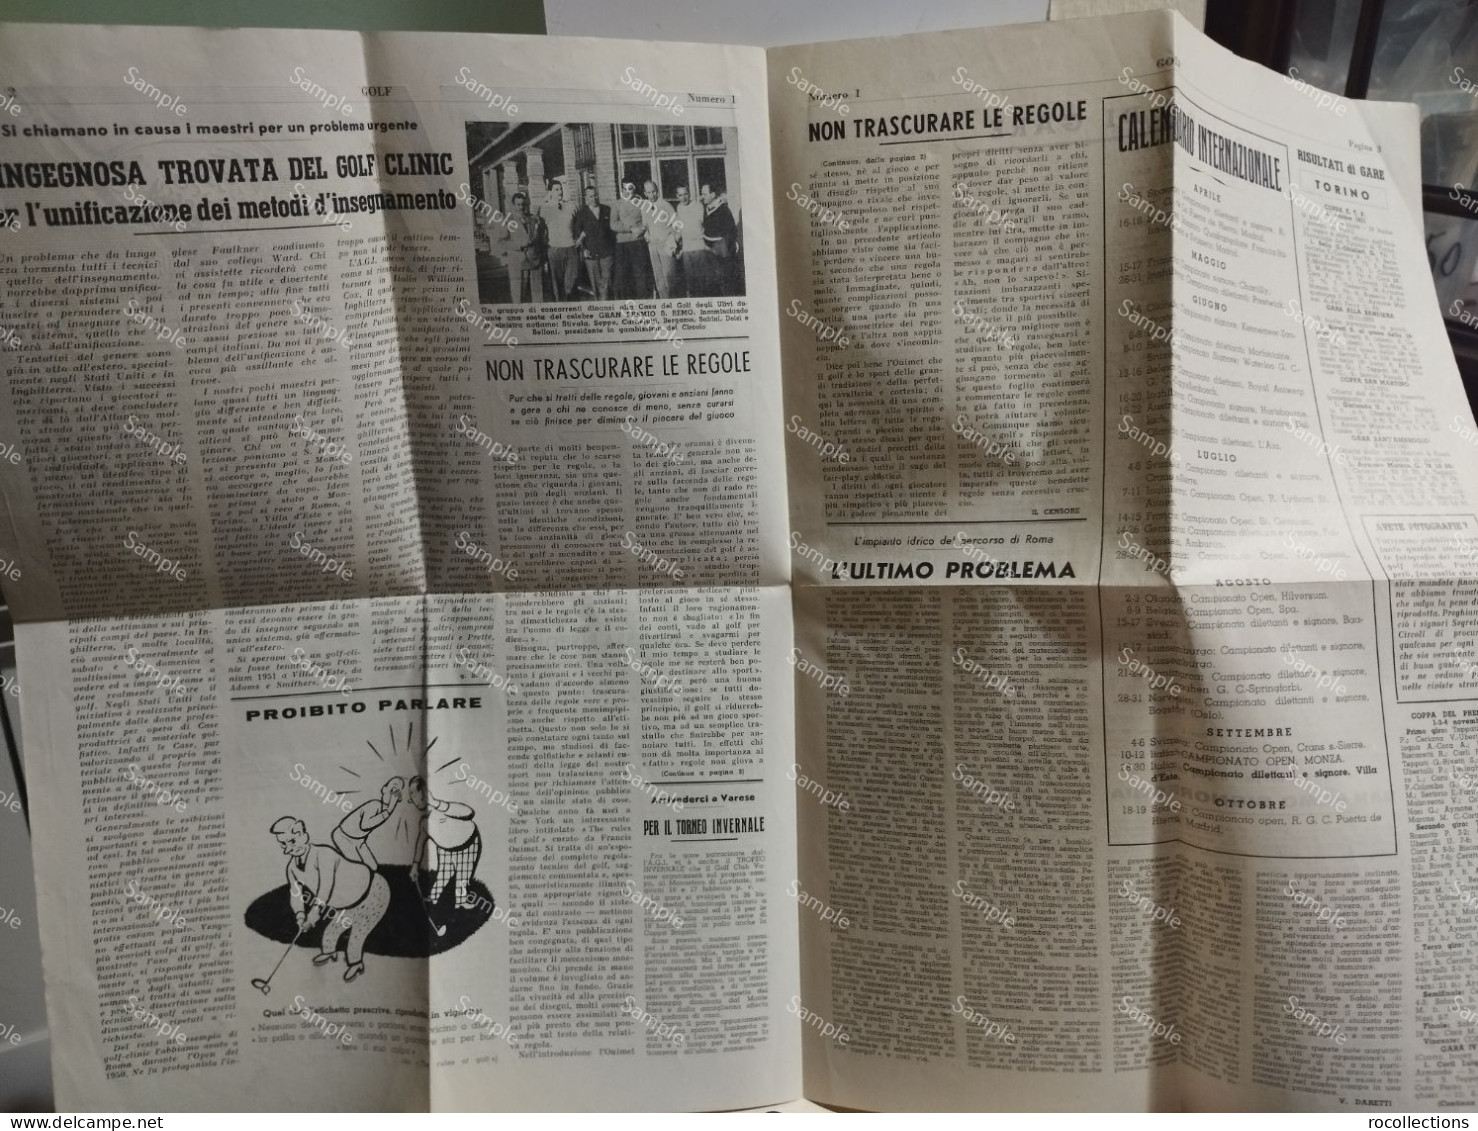 Italy Newspaper Italia Giornale GOLF Notiziario Ufficiale Associazione Gofistica Italiana. Gennaio 1952. - Sports